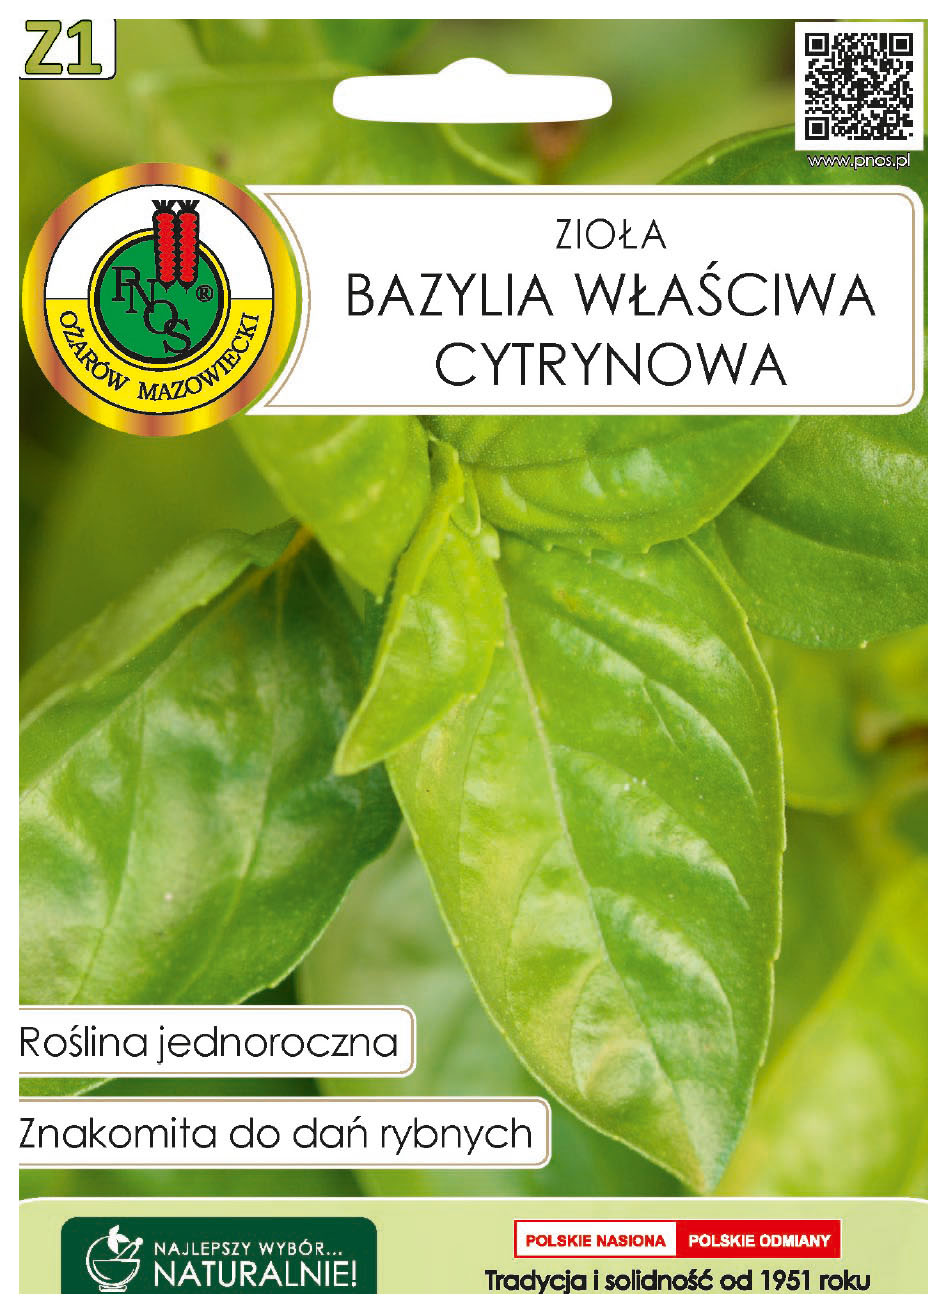 Bazylia właściwa cytrynowa to roślina jednoroczna, uprawiana z rozsady lub z siewu wprost do gruntu nawet na domowym parapecie.